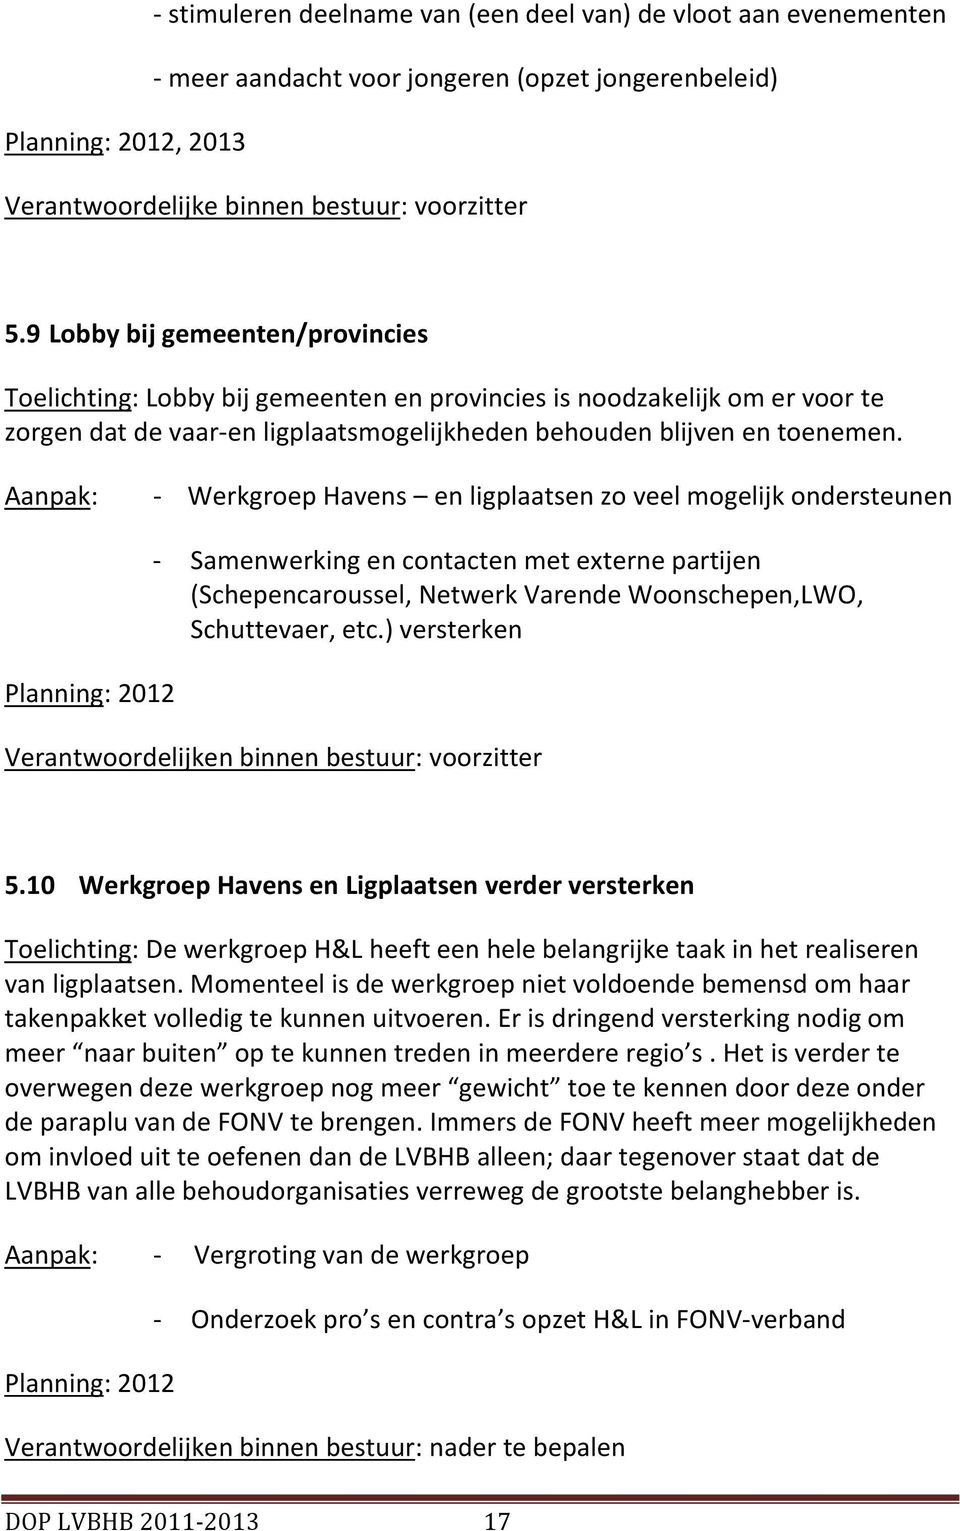 - Werkgroep Havens en ligplaatsen zo veel mogelijk ondersteunen Planning: 2012 - Samenwerking en contacten met externe partijen (Schepencaroussel, Netwerk Varende Woonschepen,LWO, Schuttevaer, etc.